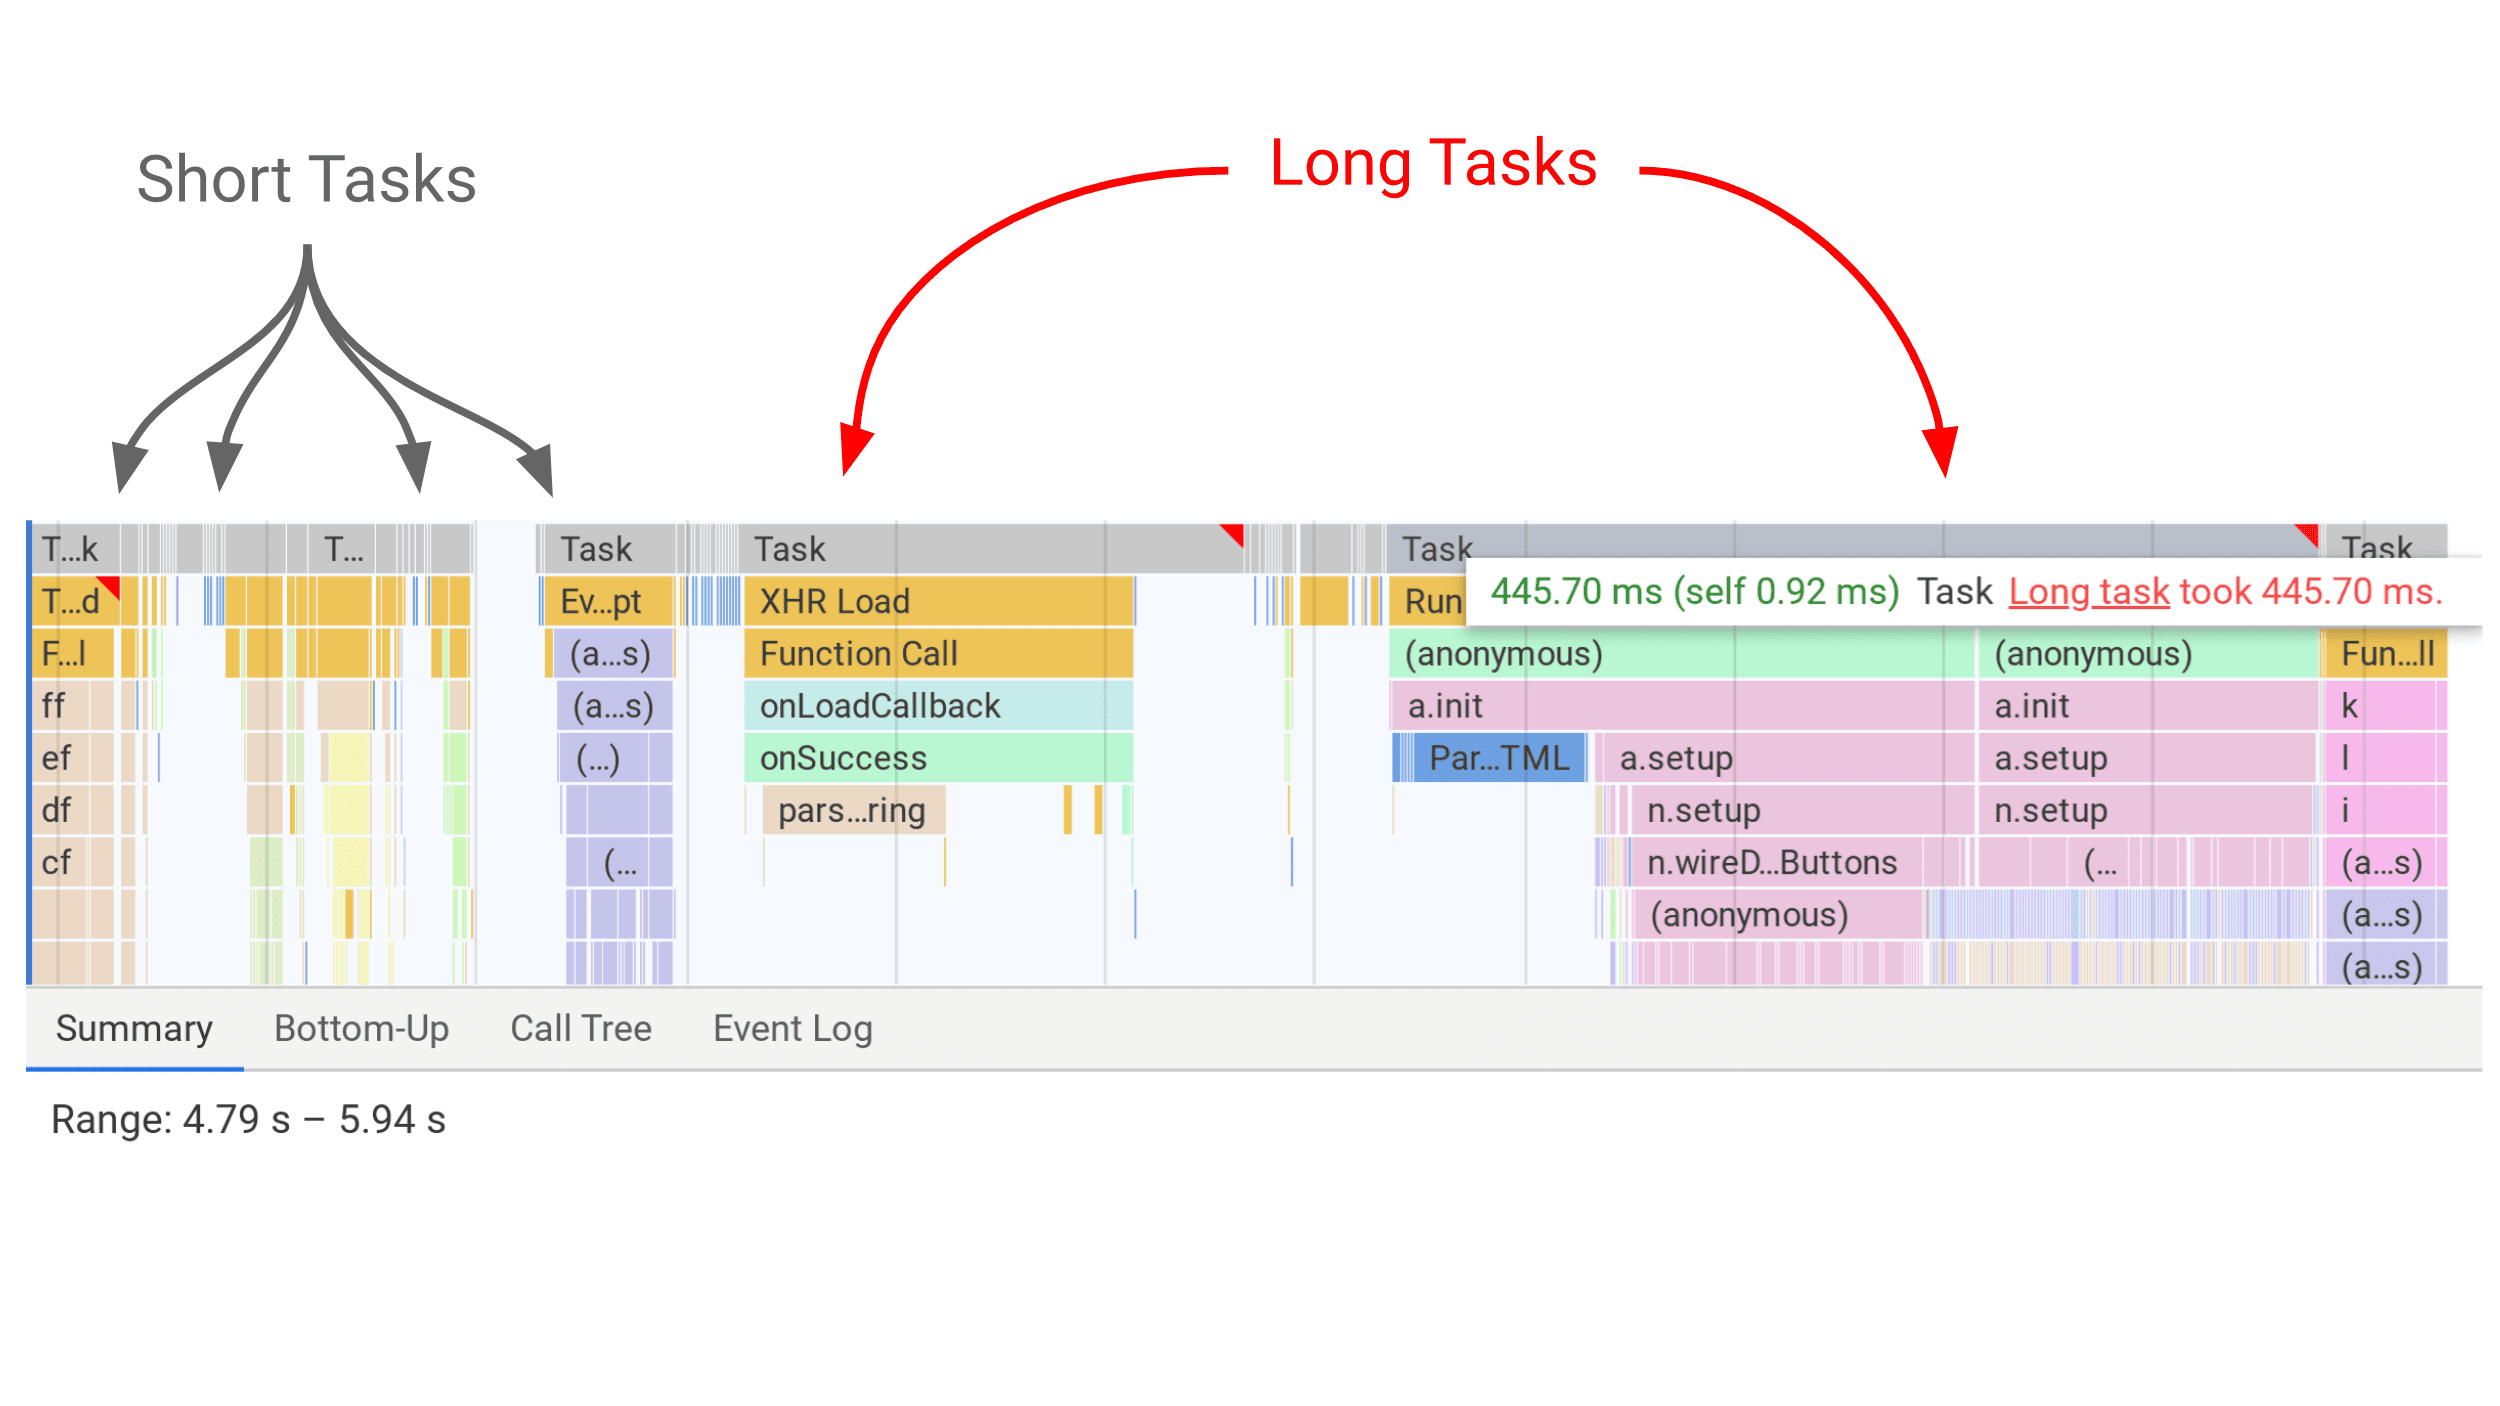 Outils de développement affichant les tâches longues sous forme de barres grises dans le panneau des performances avec un indicateur rouge pour les tâches longues